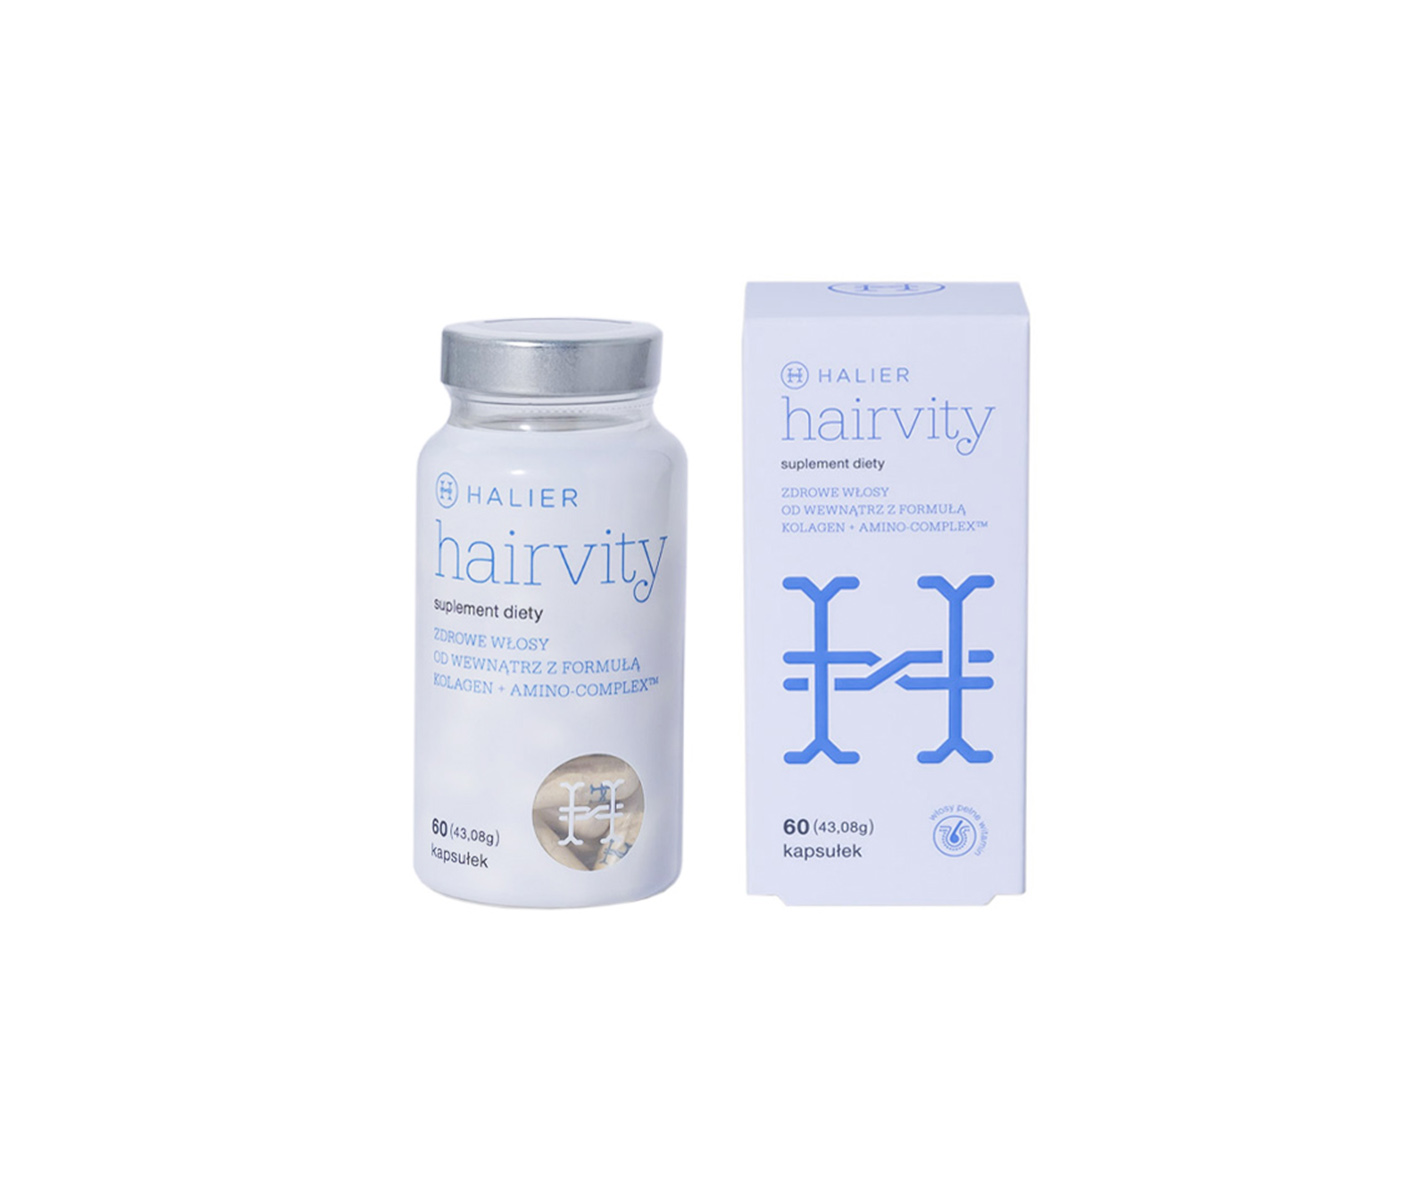 Halier, Hairvity, Hair Loss & Hair Growth Pills with Zinc